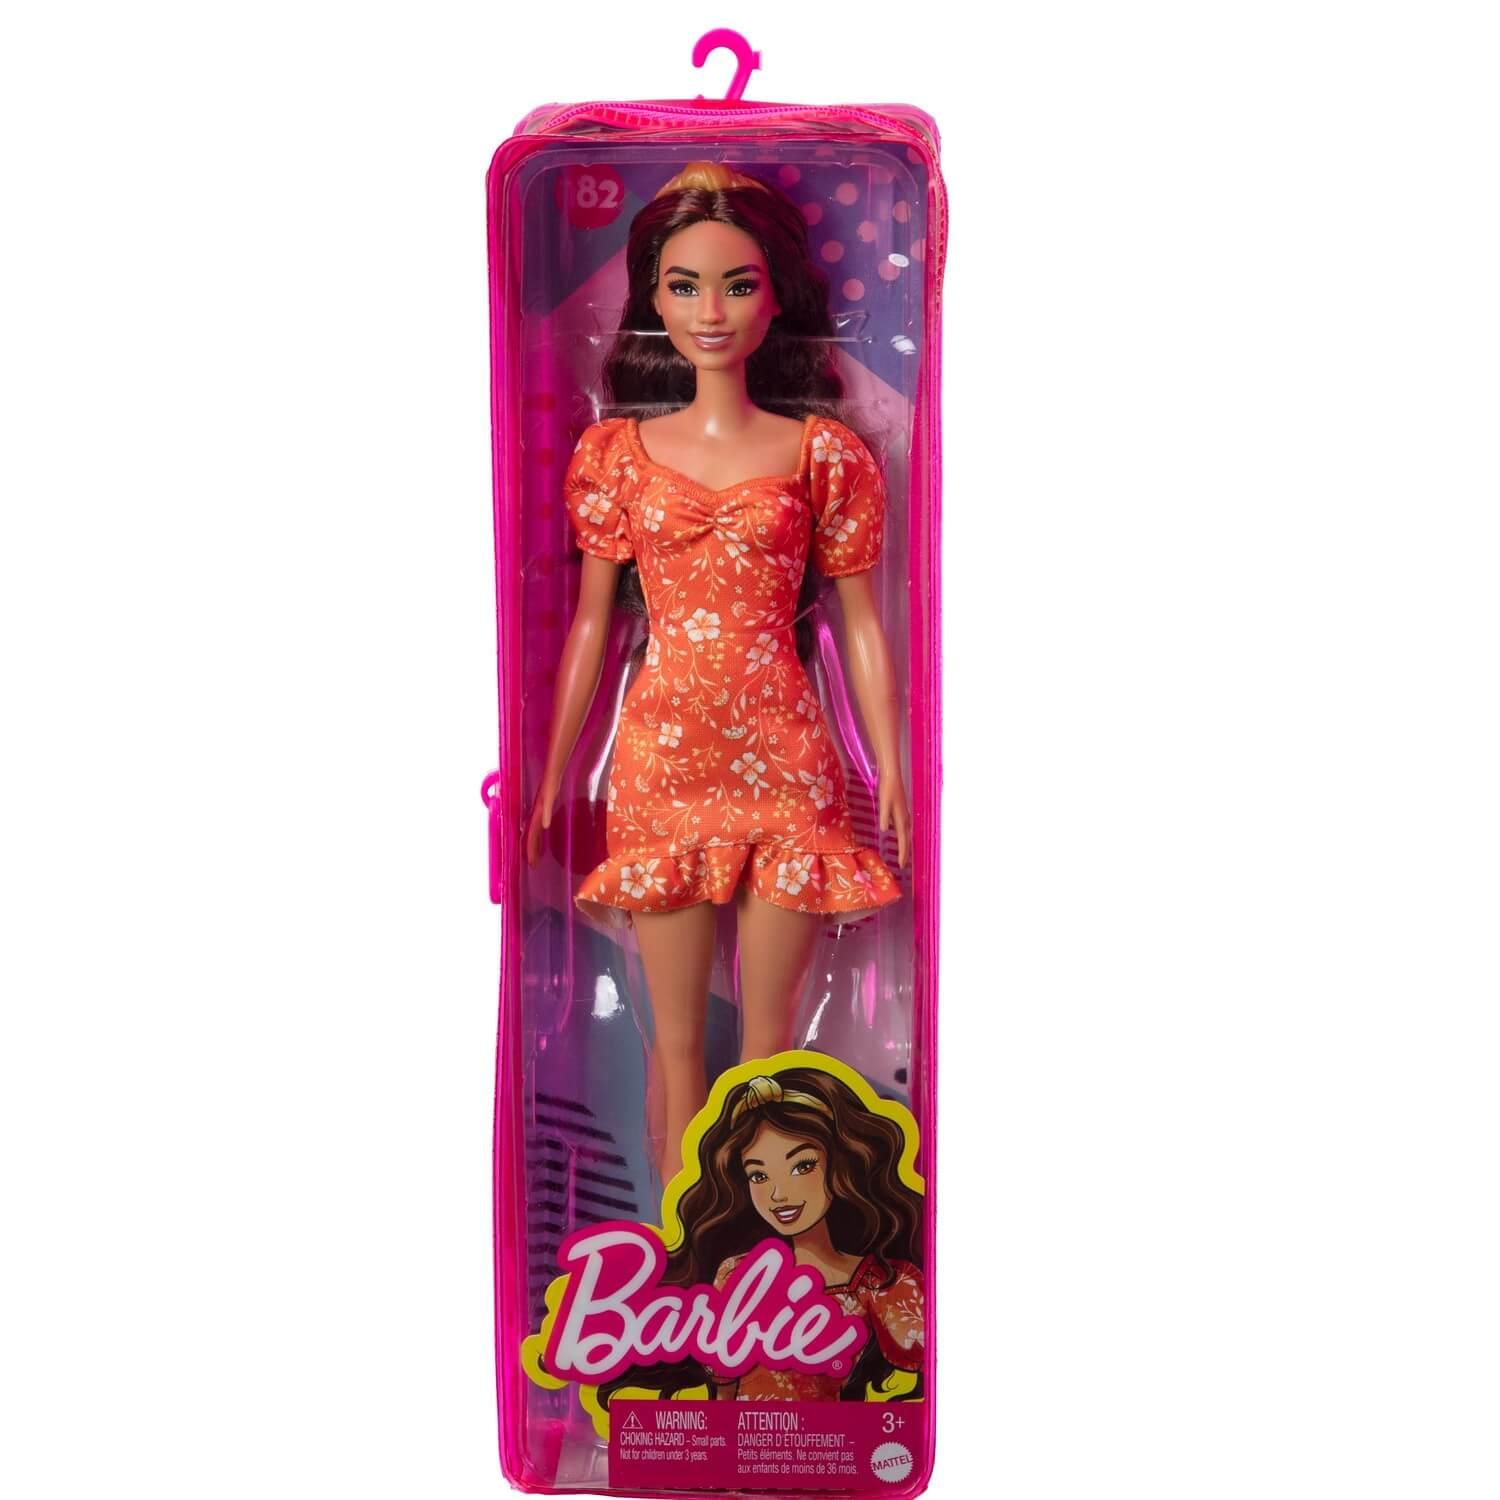 Vêtements Barbie - 3 tenues pour poupées - Vêtements de poupée - Convient  pour ao